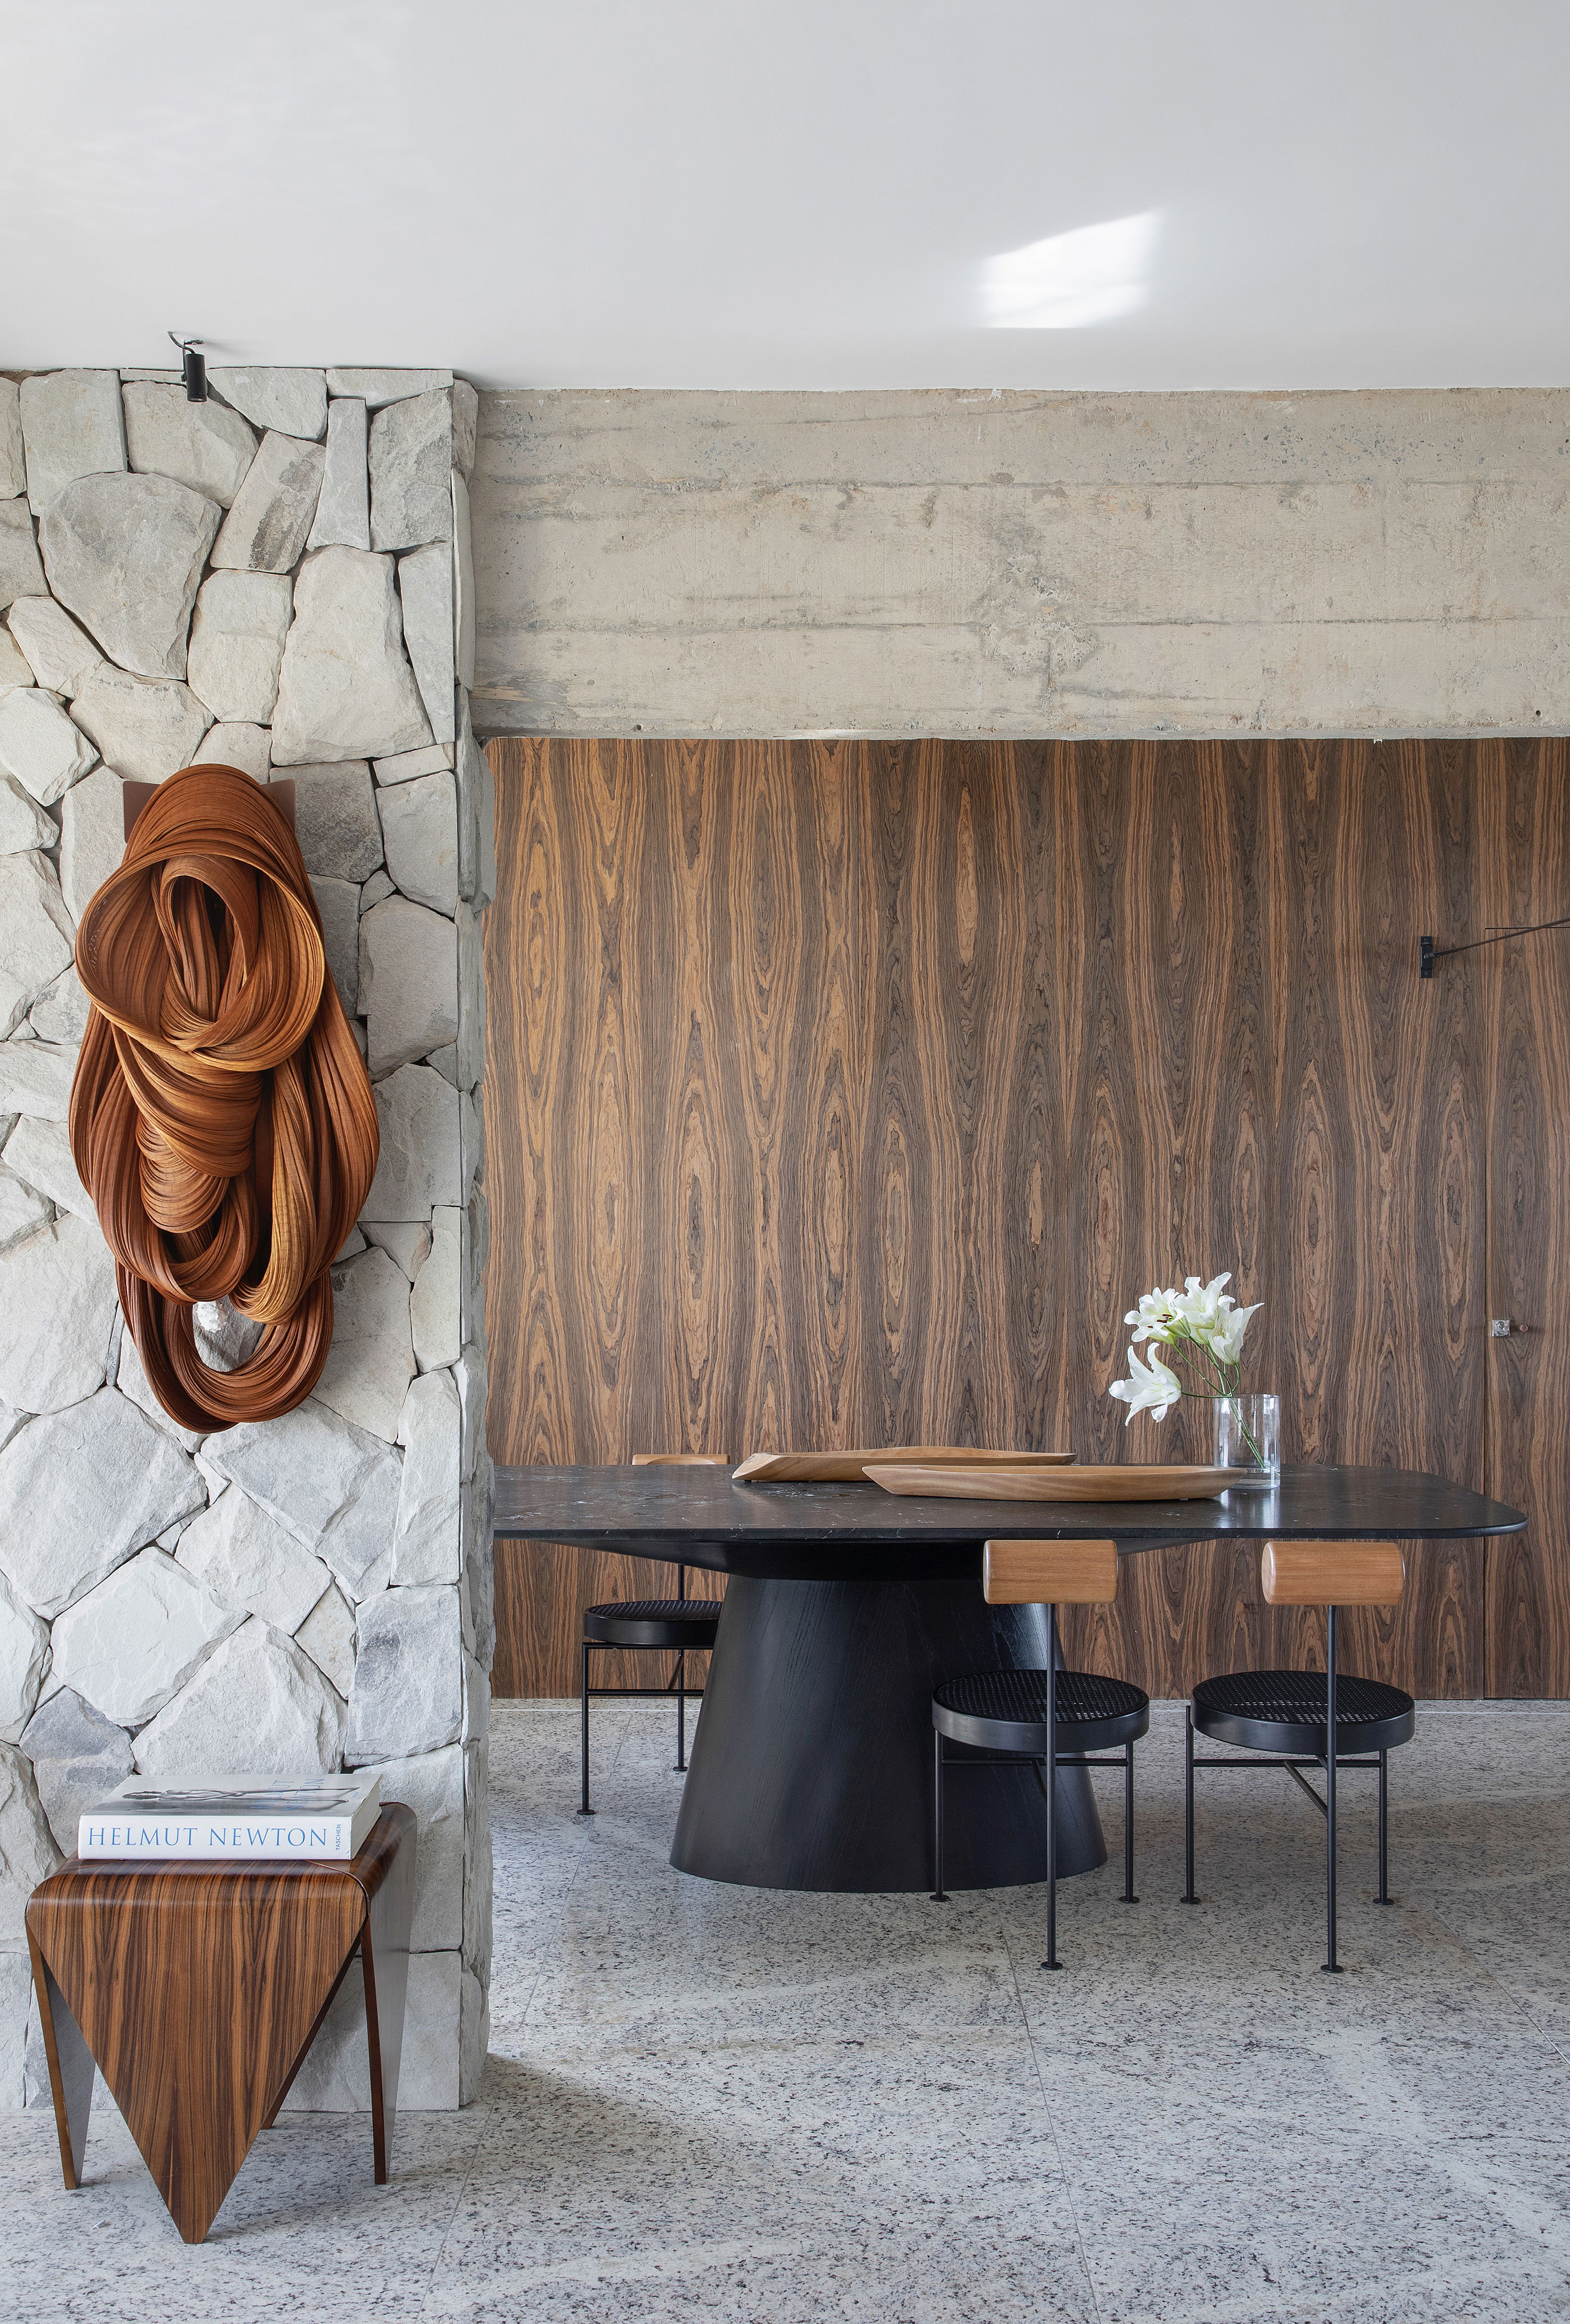 Projeto de Roby Macedo. Na foto, sala de jantar com parede revestida de madeira, teto de concreto aparente e parede de pedra.